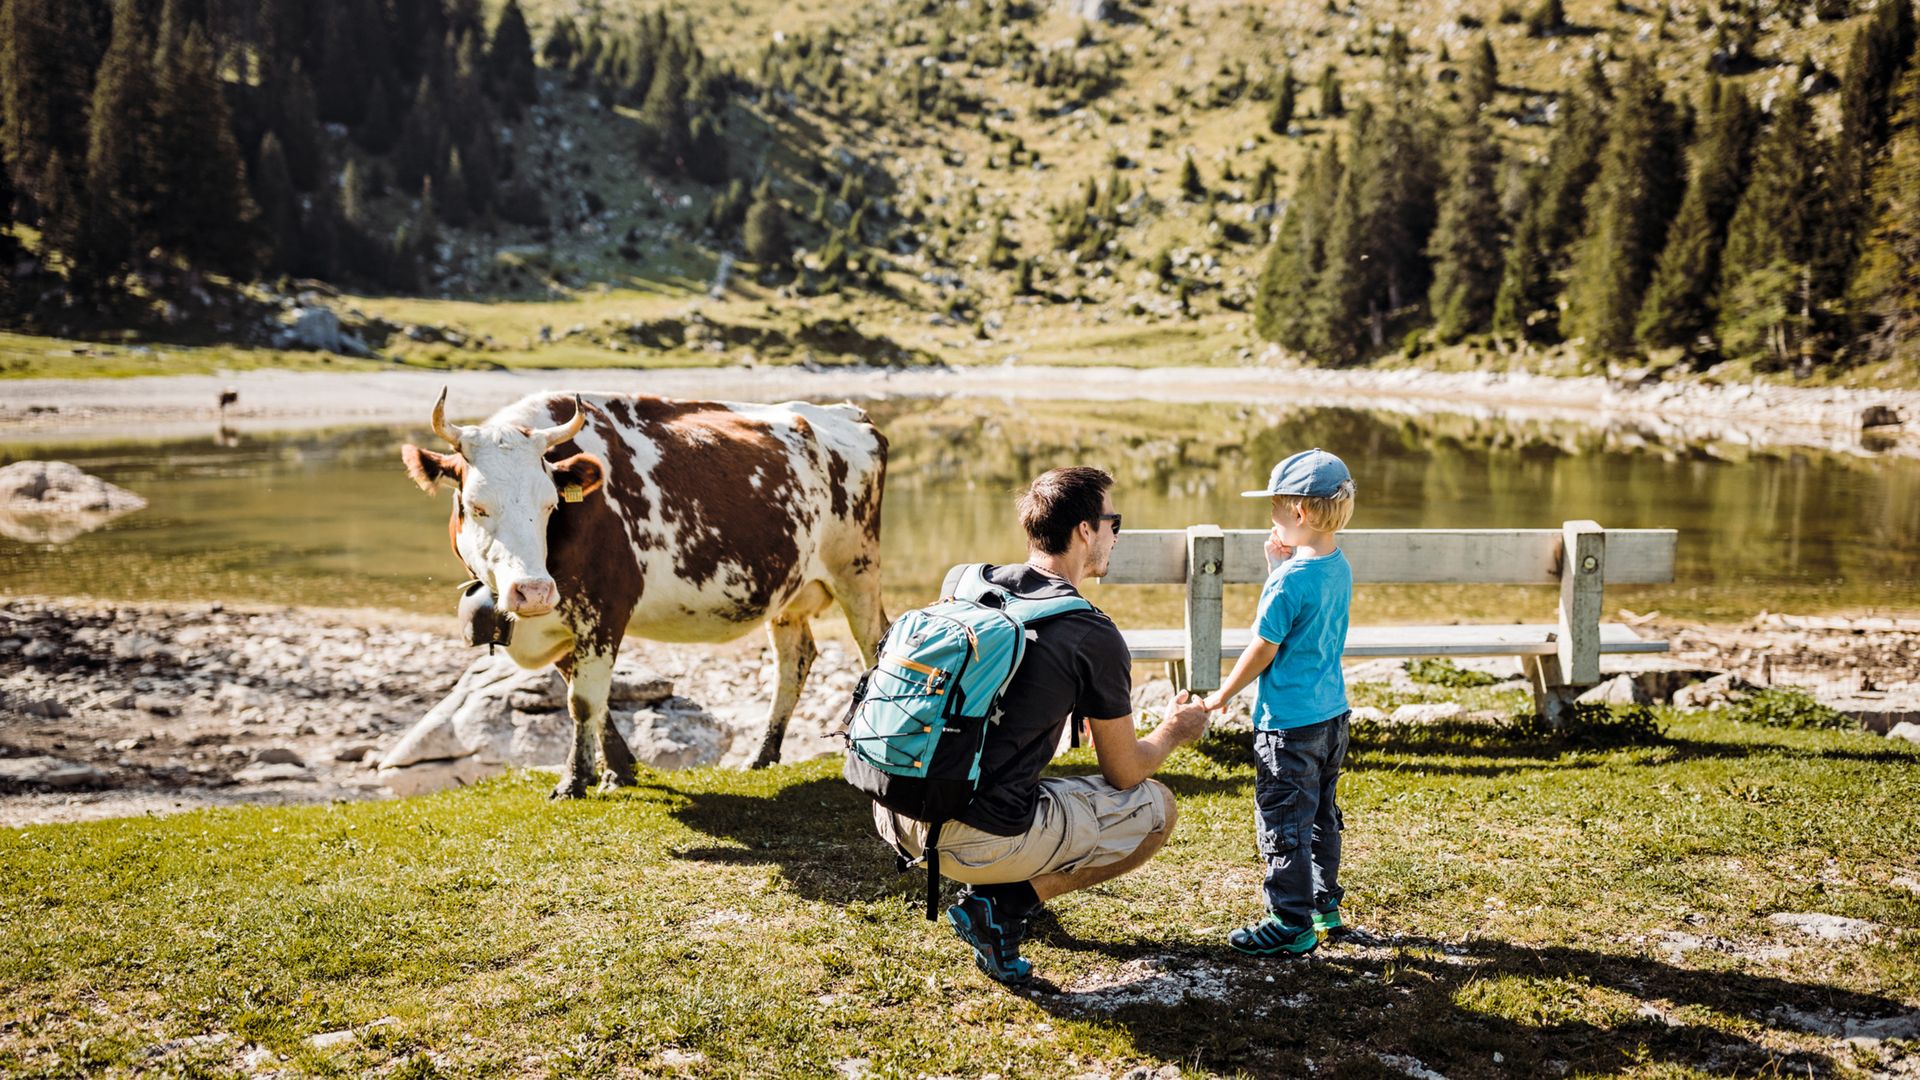 Padre e figlio si trovano davanti a un piccolo lago di montagna e a una mucca. La mucca guarda con interesse i due visitatori. È un bel tempo estivo e soleggiato.